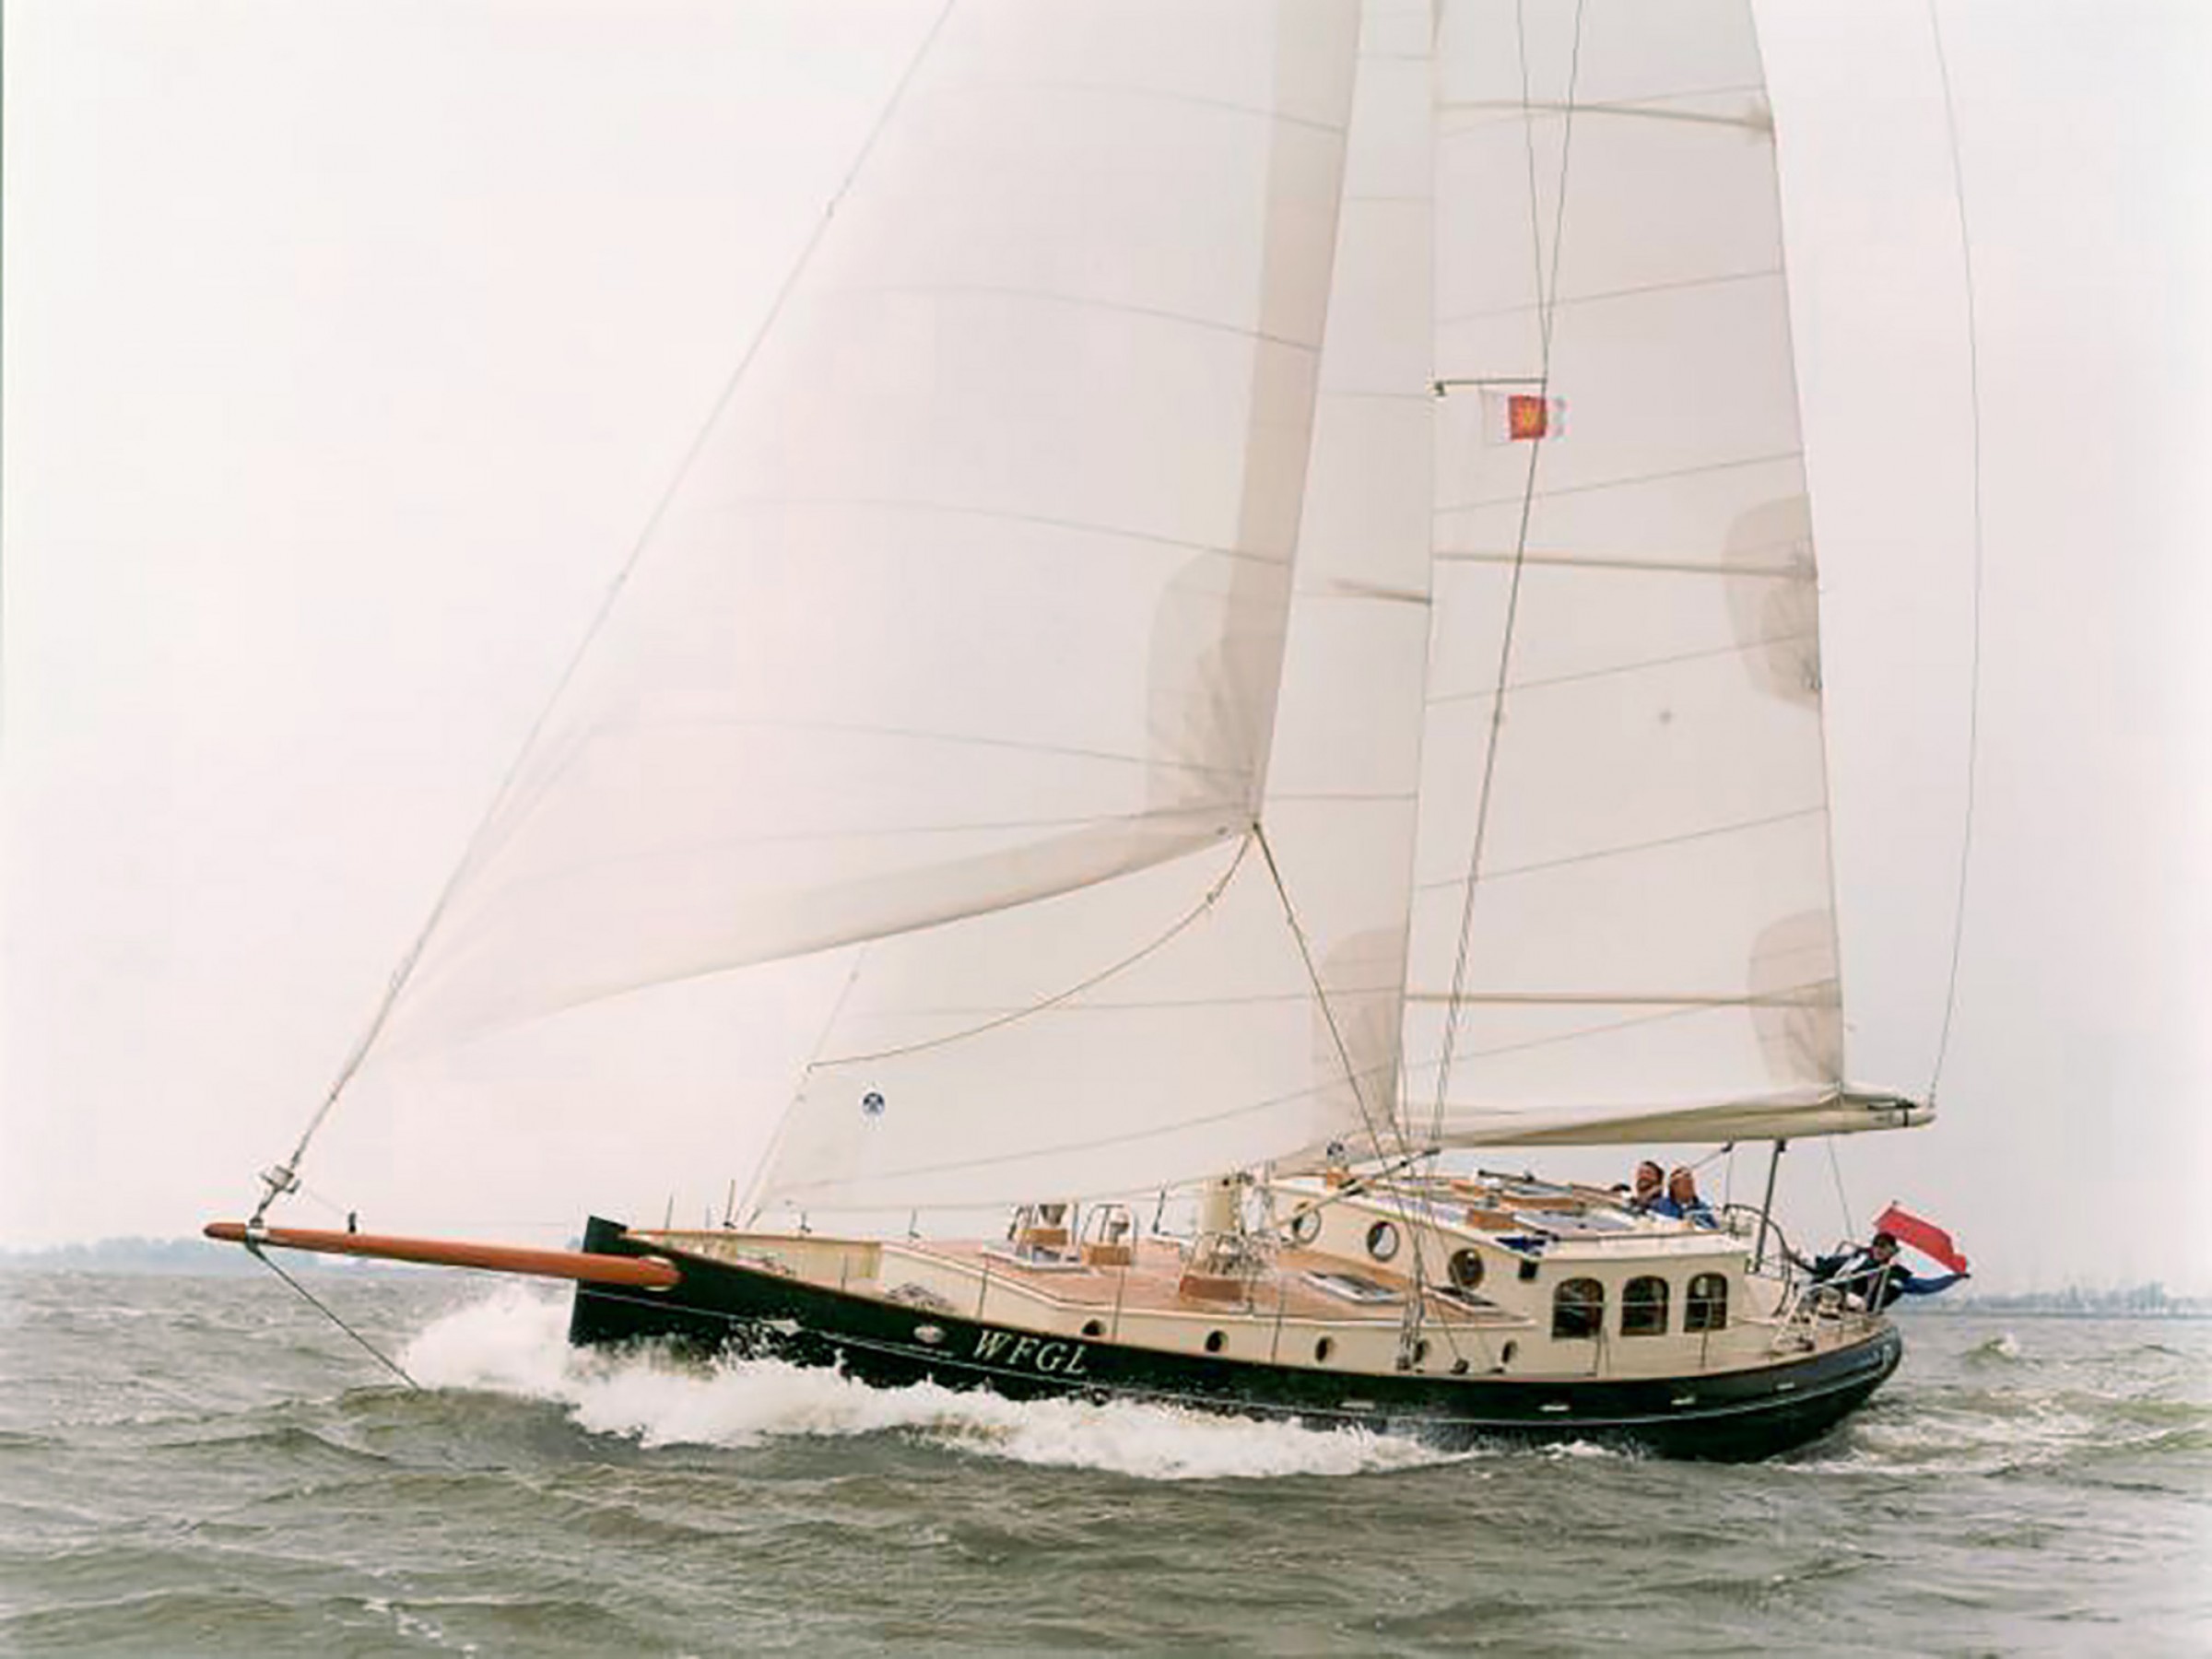 puffin 42 sailboat